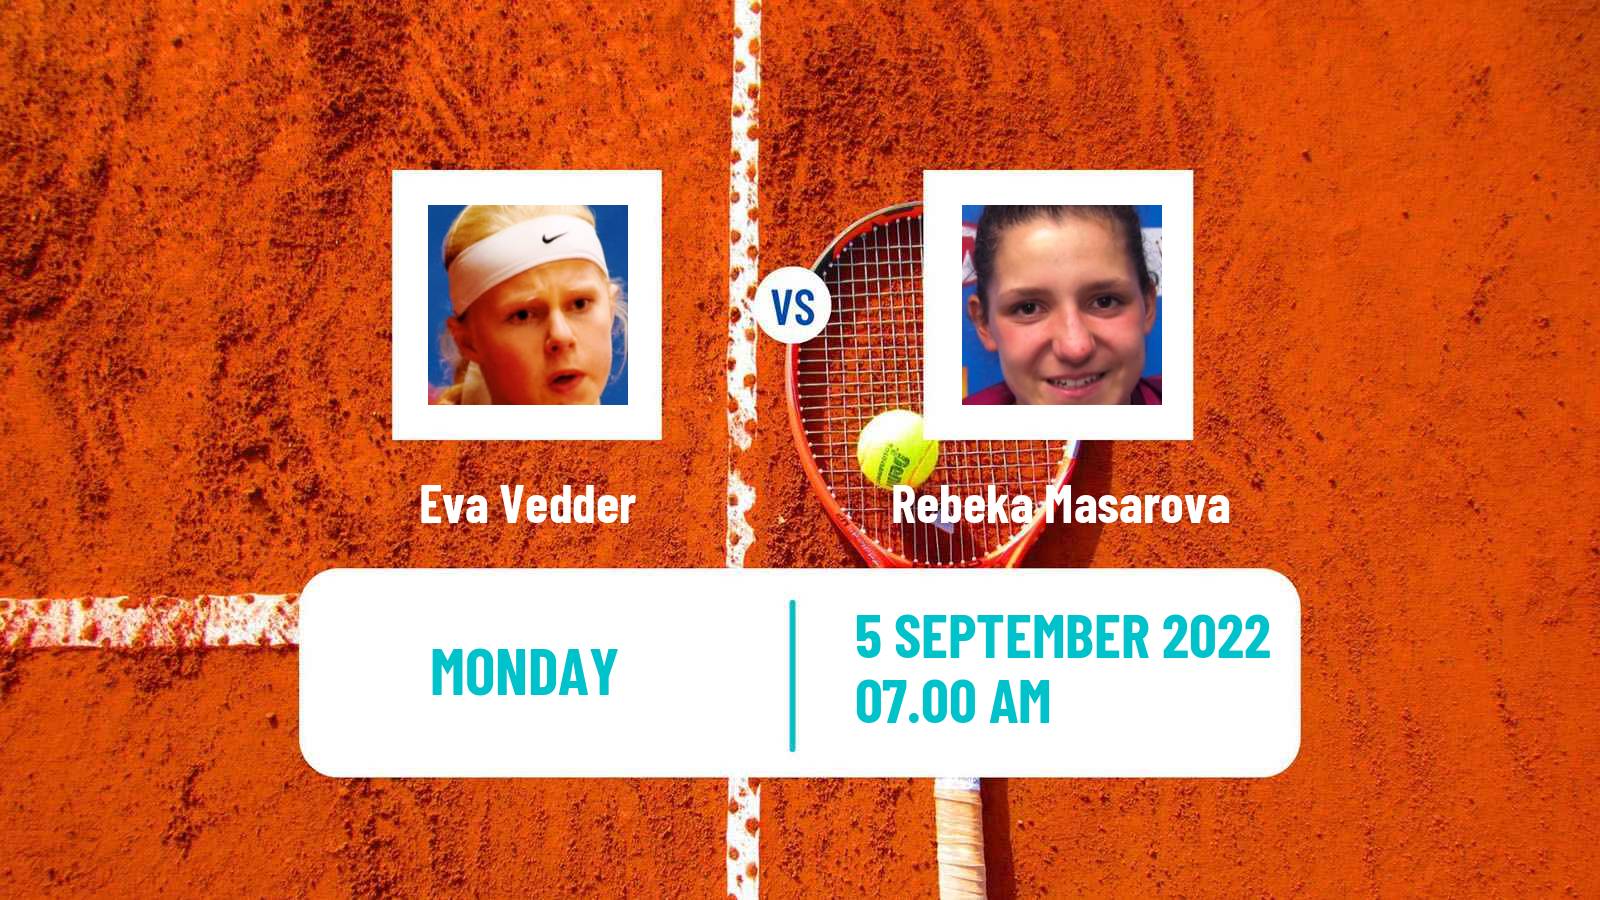 Tennis ATP Challenger Eva Vedder - Rebeka Masarova